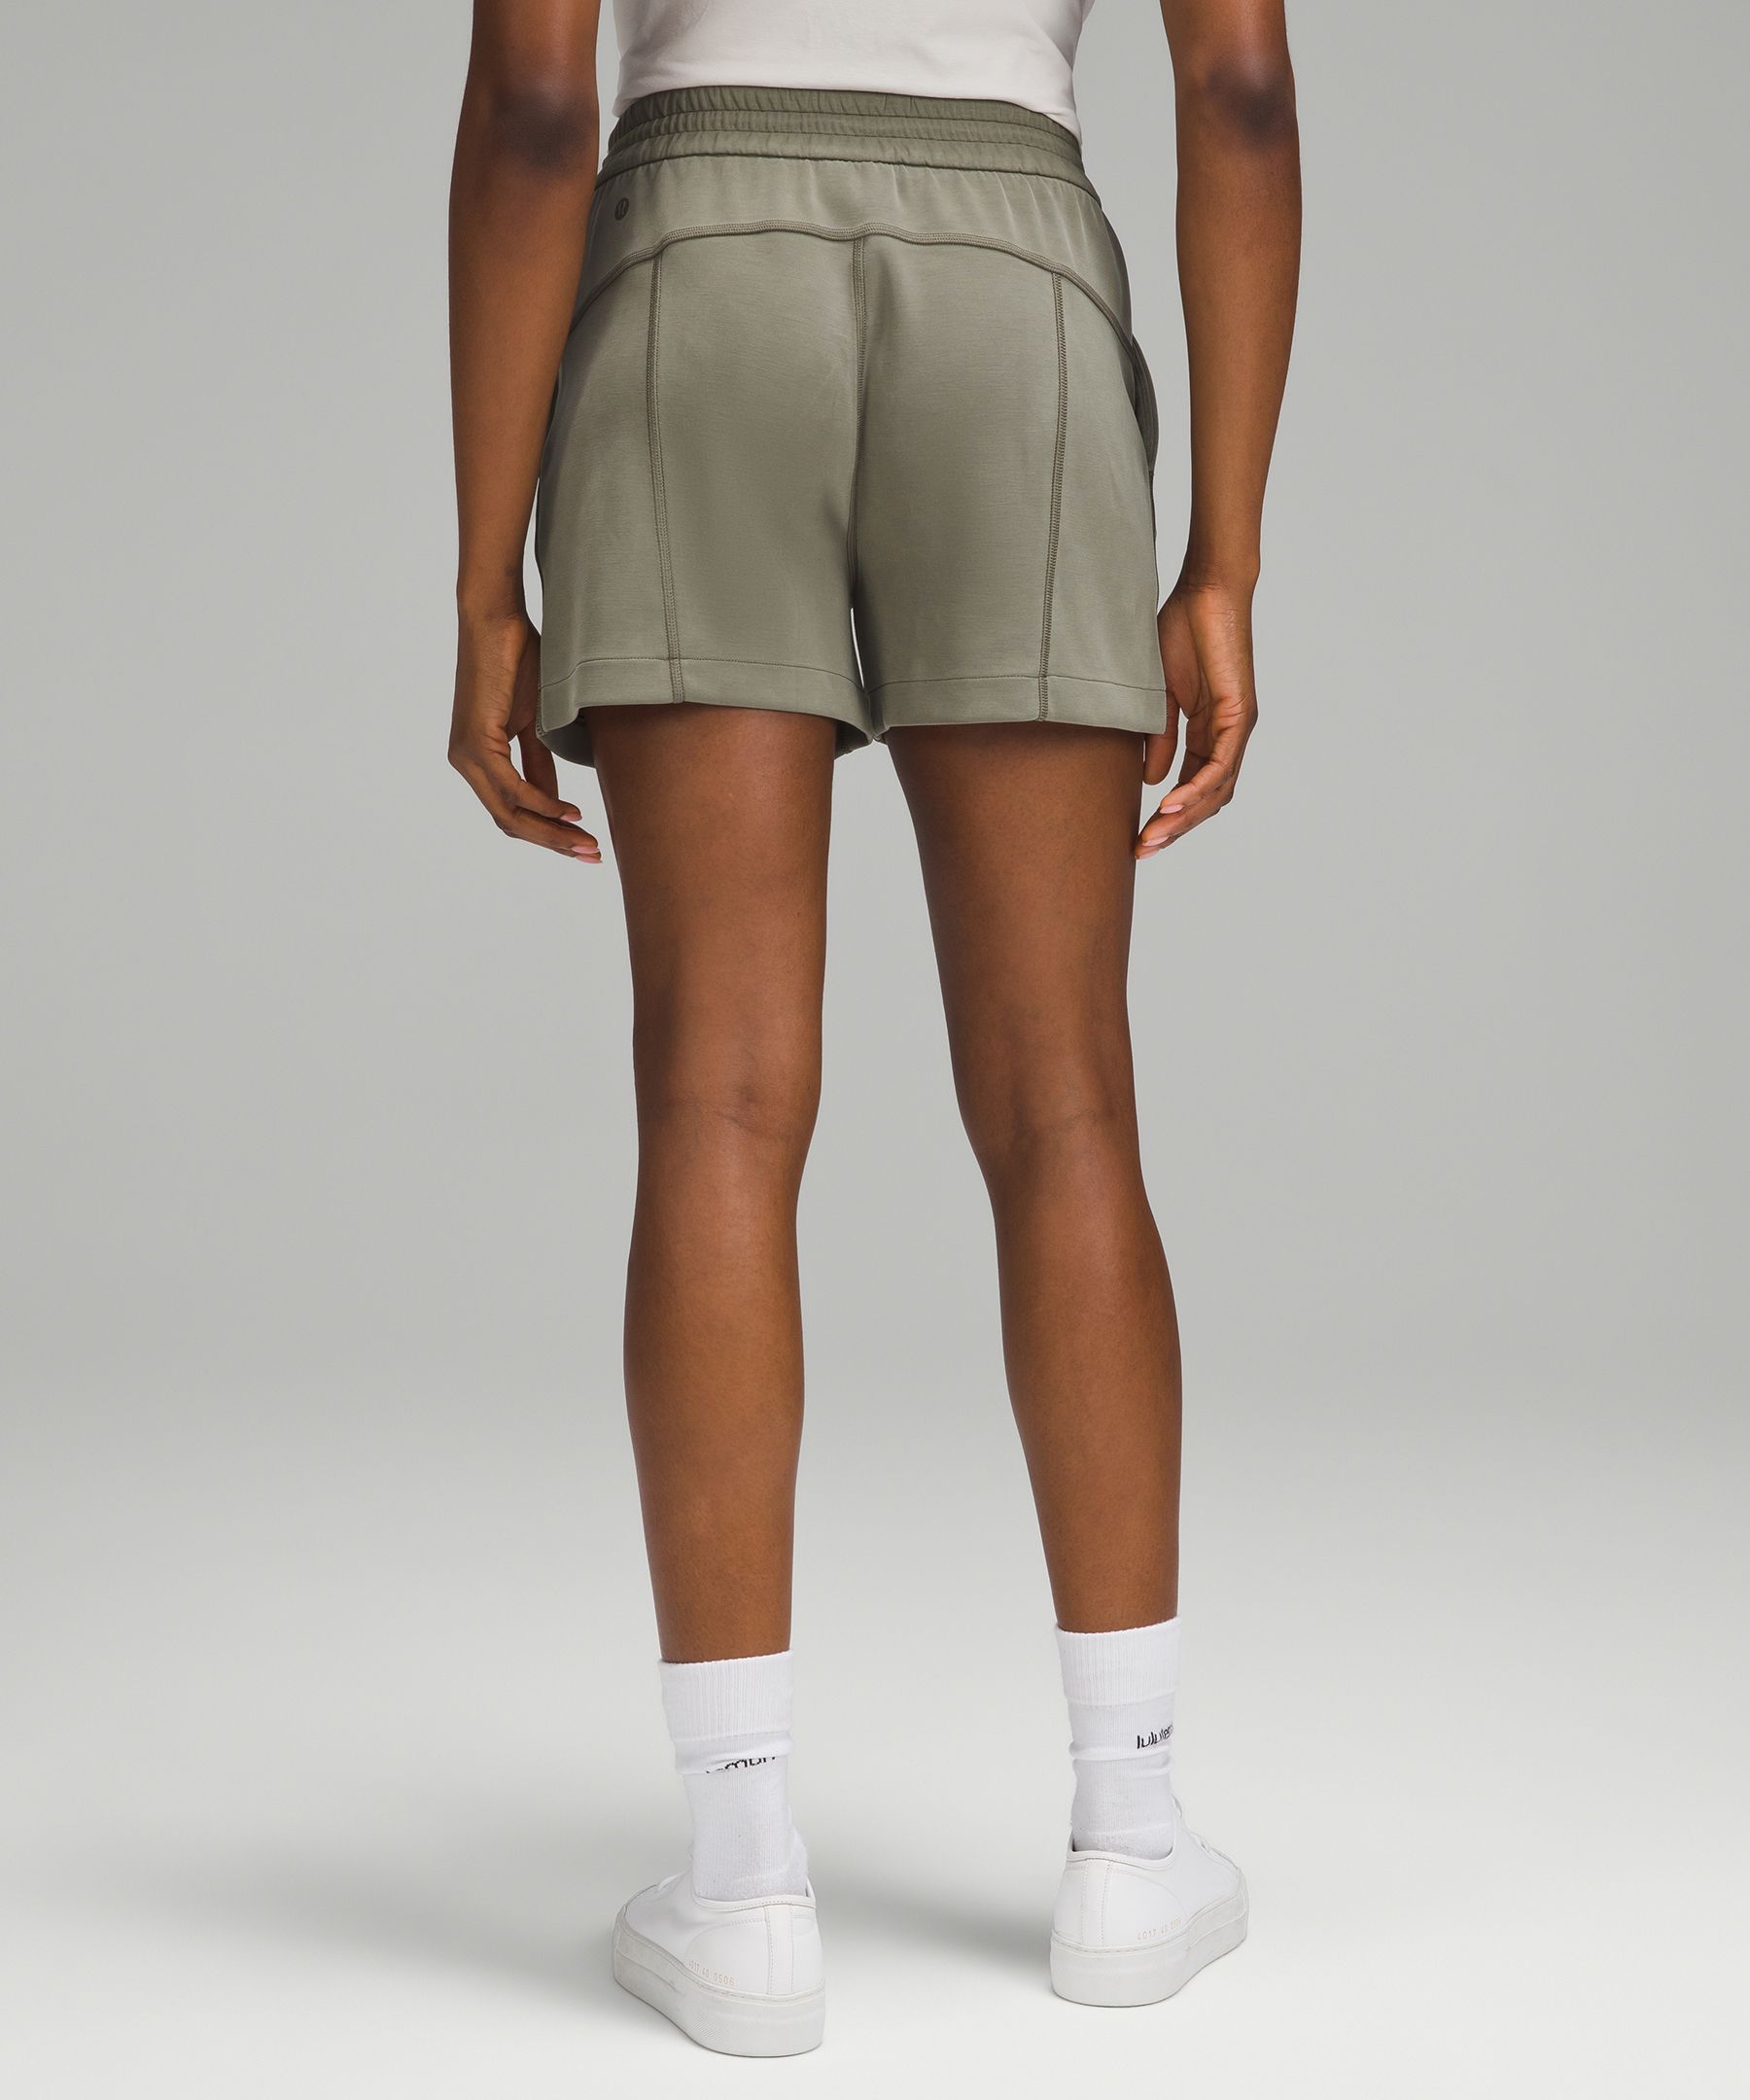 Shop Lululemon Softstreme High-rise Shorts 4"